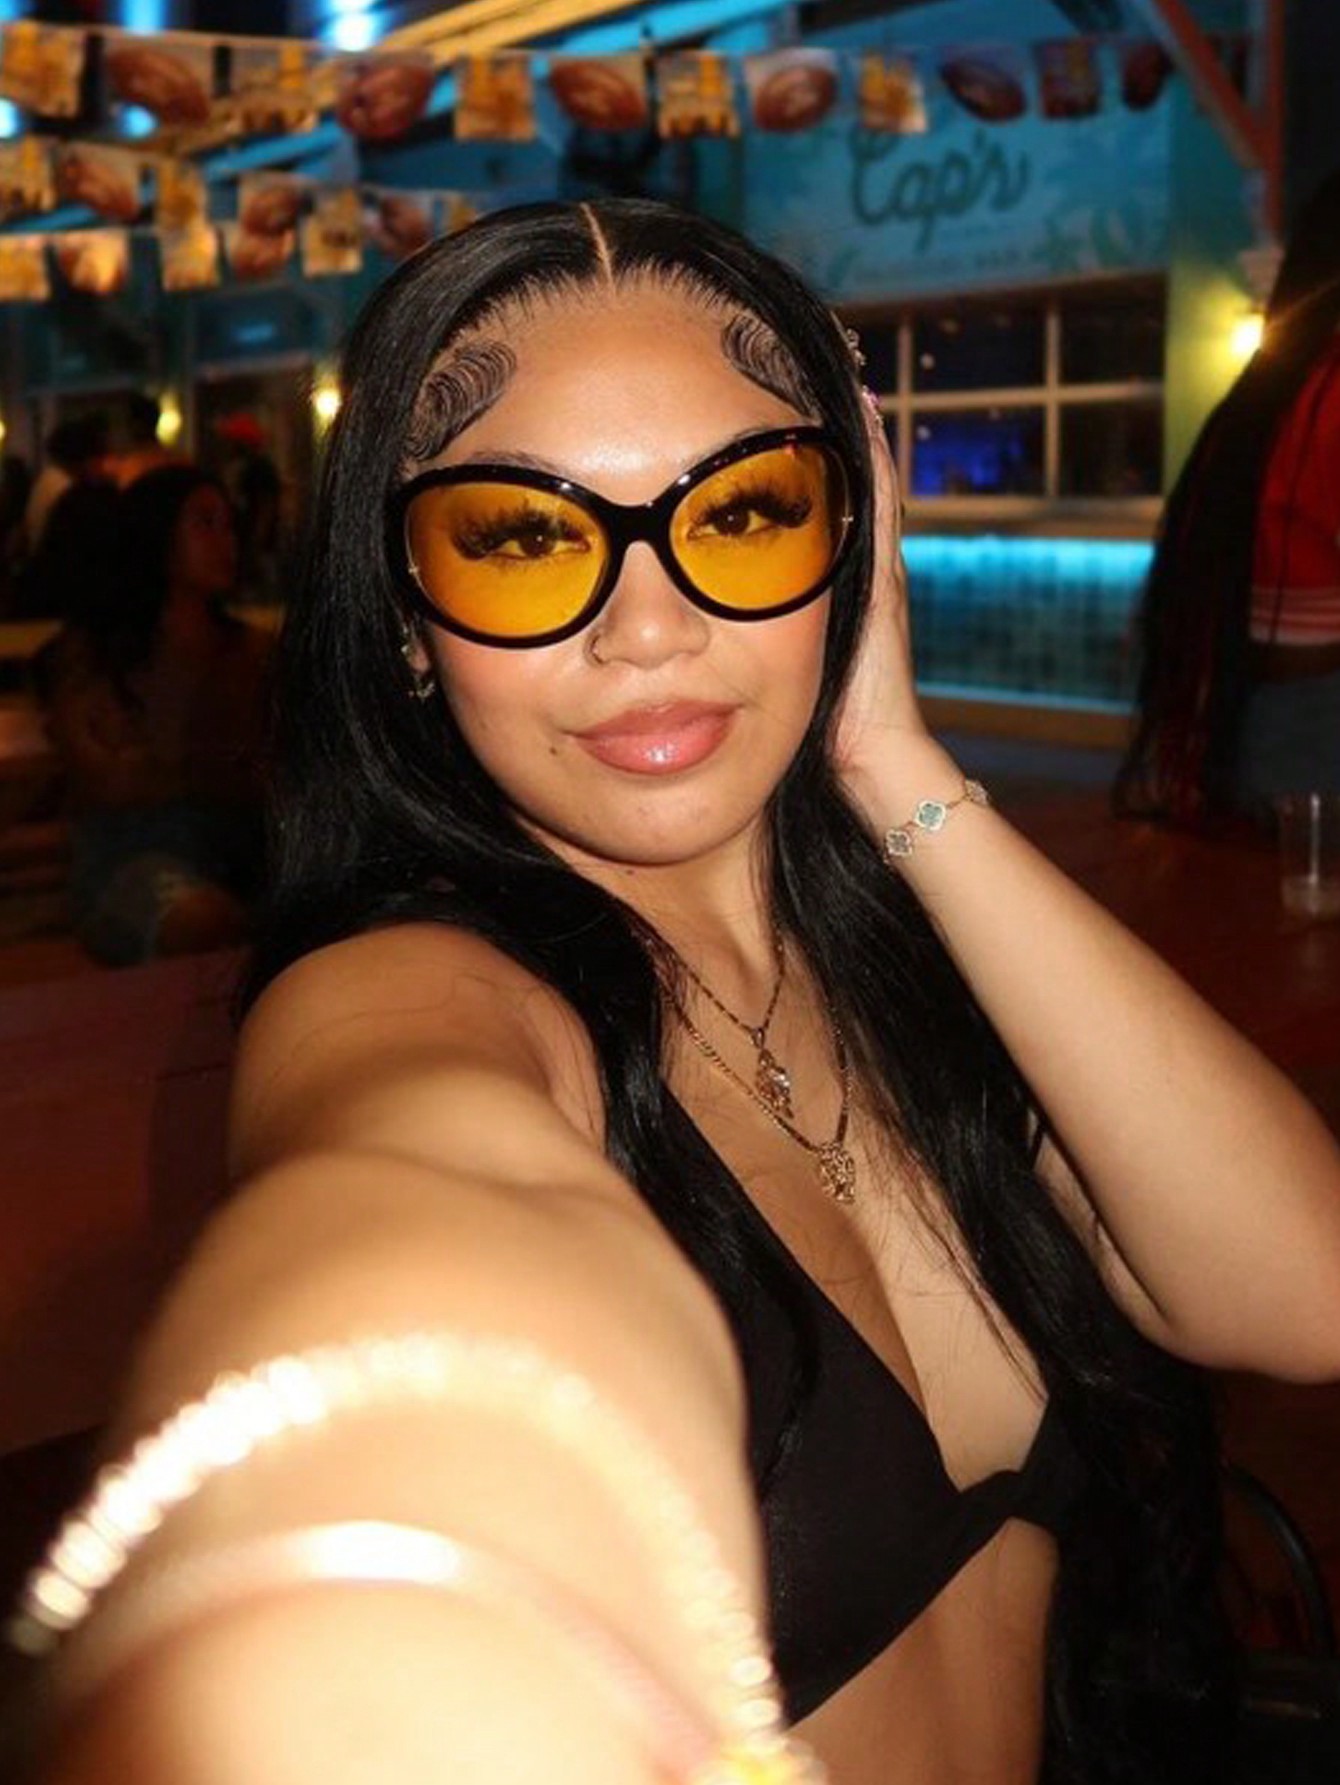 1шт. Большие солнцезащитные очки в круглой оправе с черной оправой и желтыми линзами